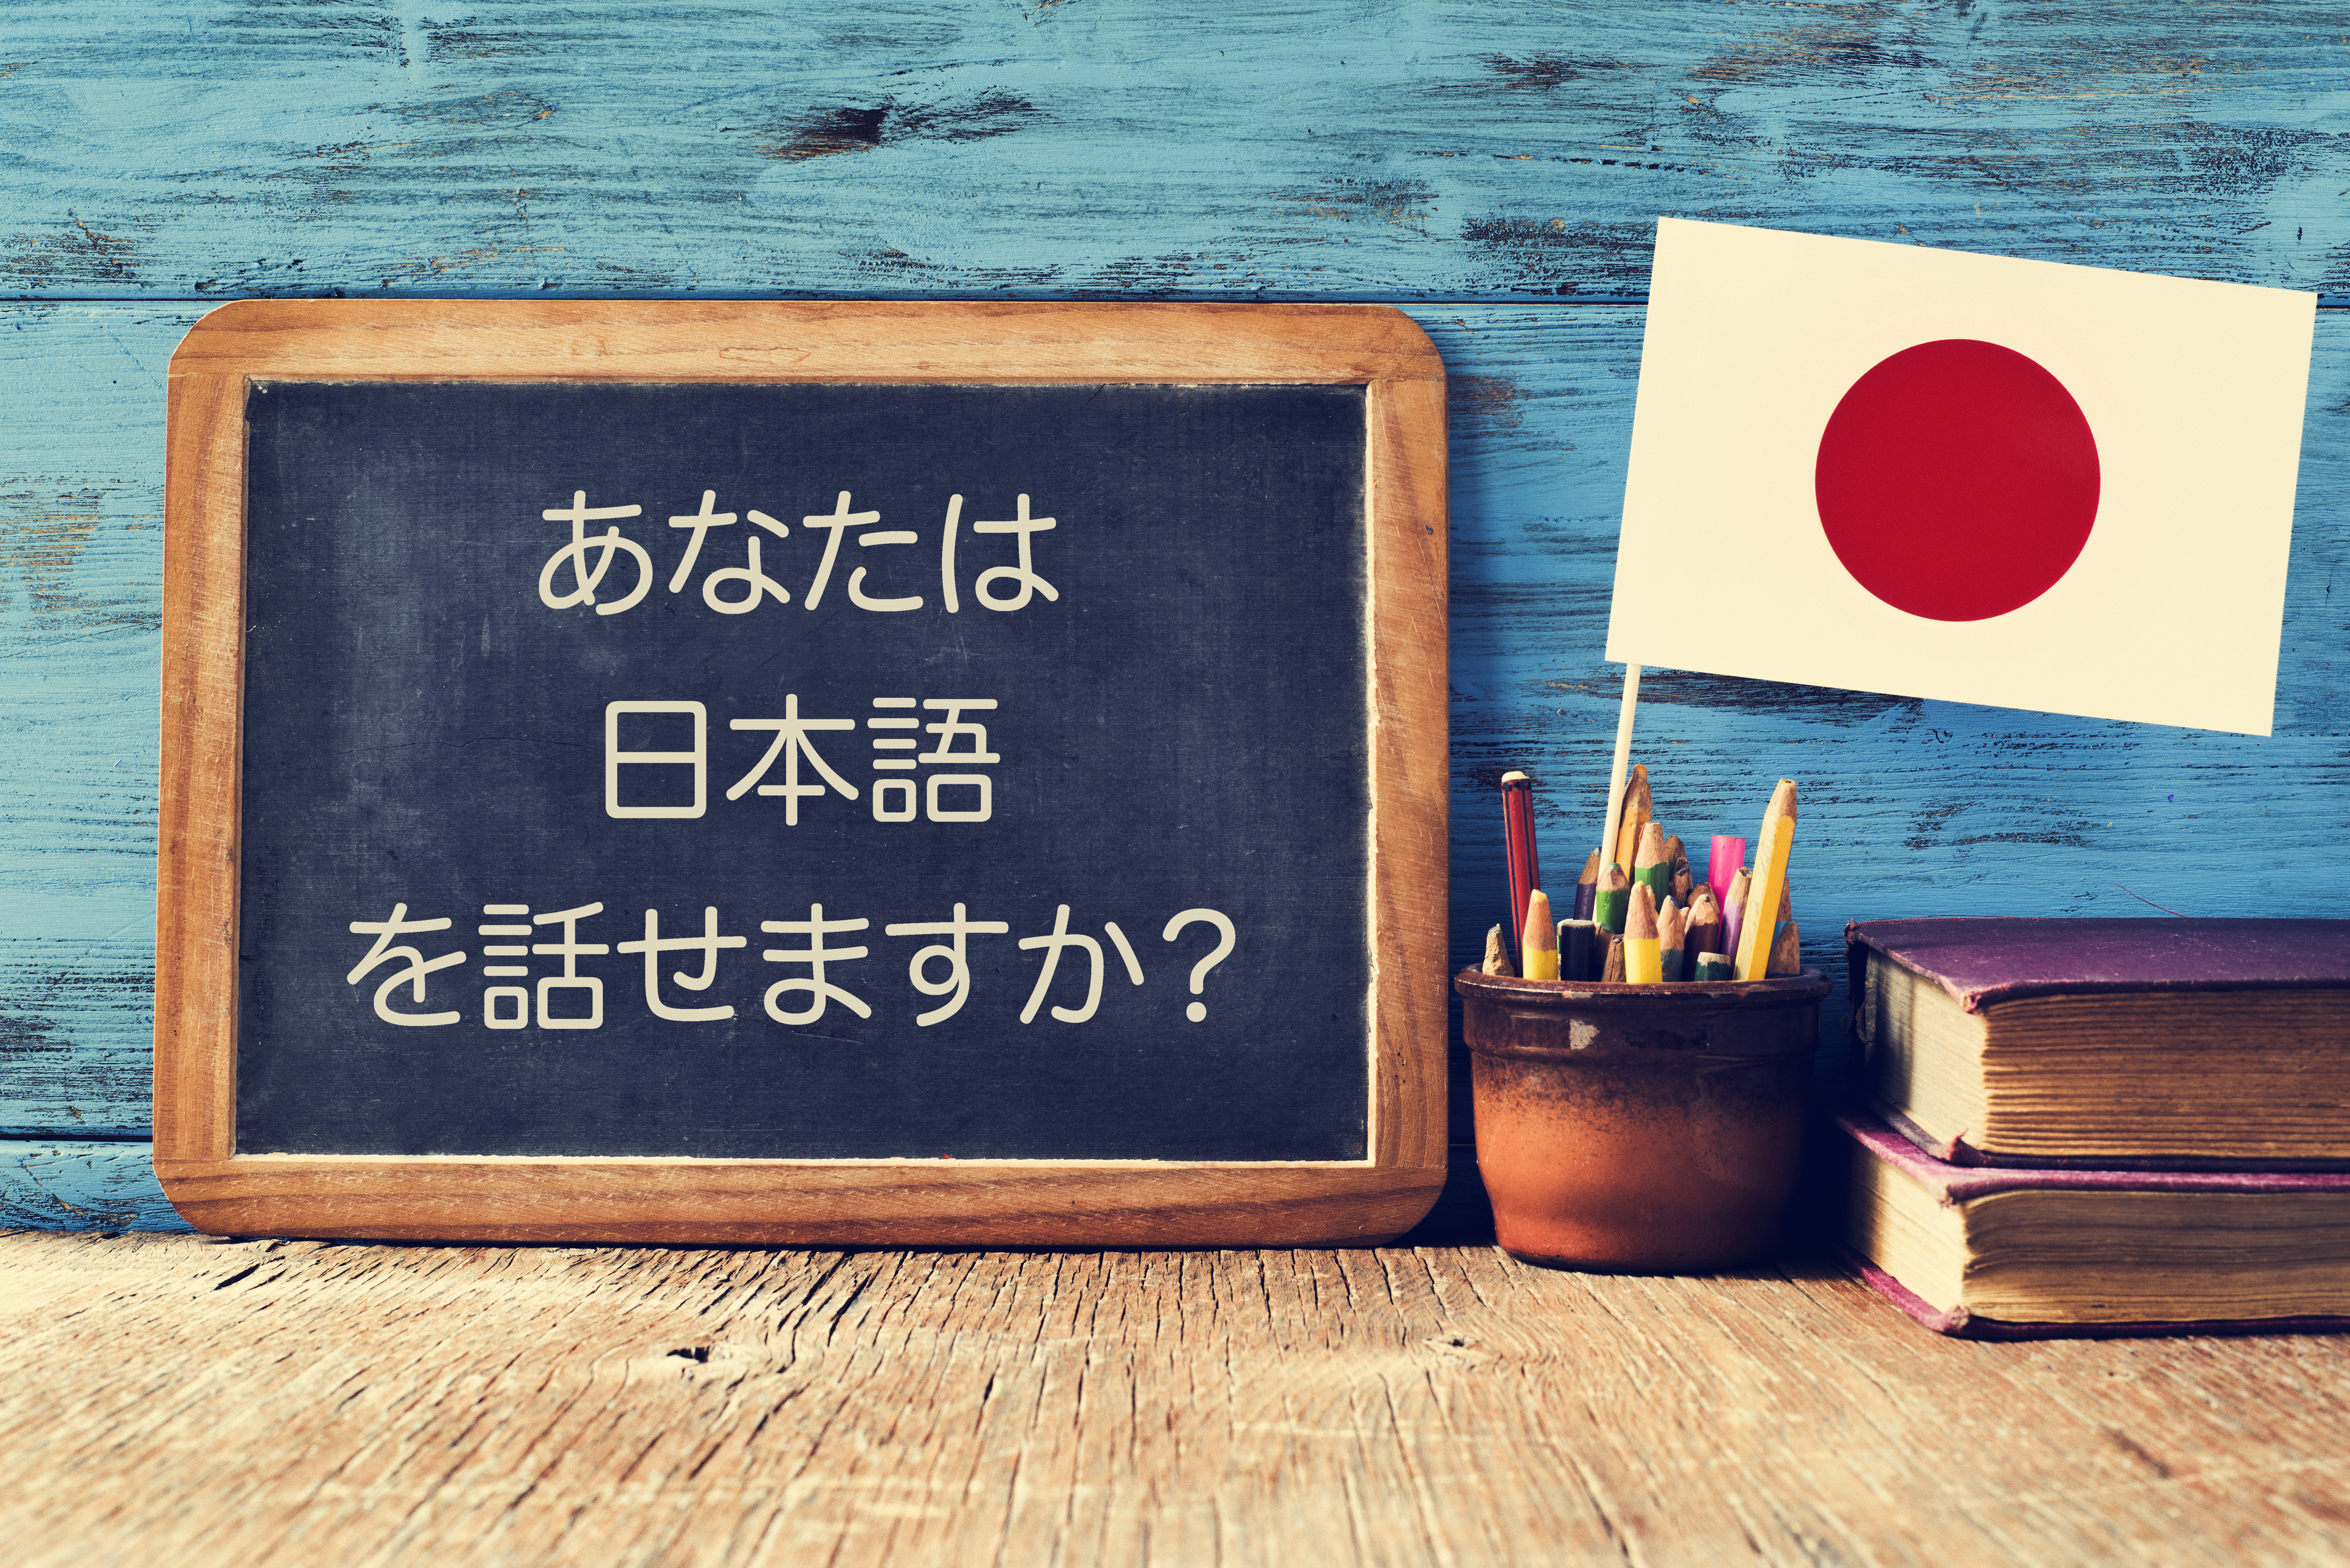 Концепция получения образования в Японии